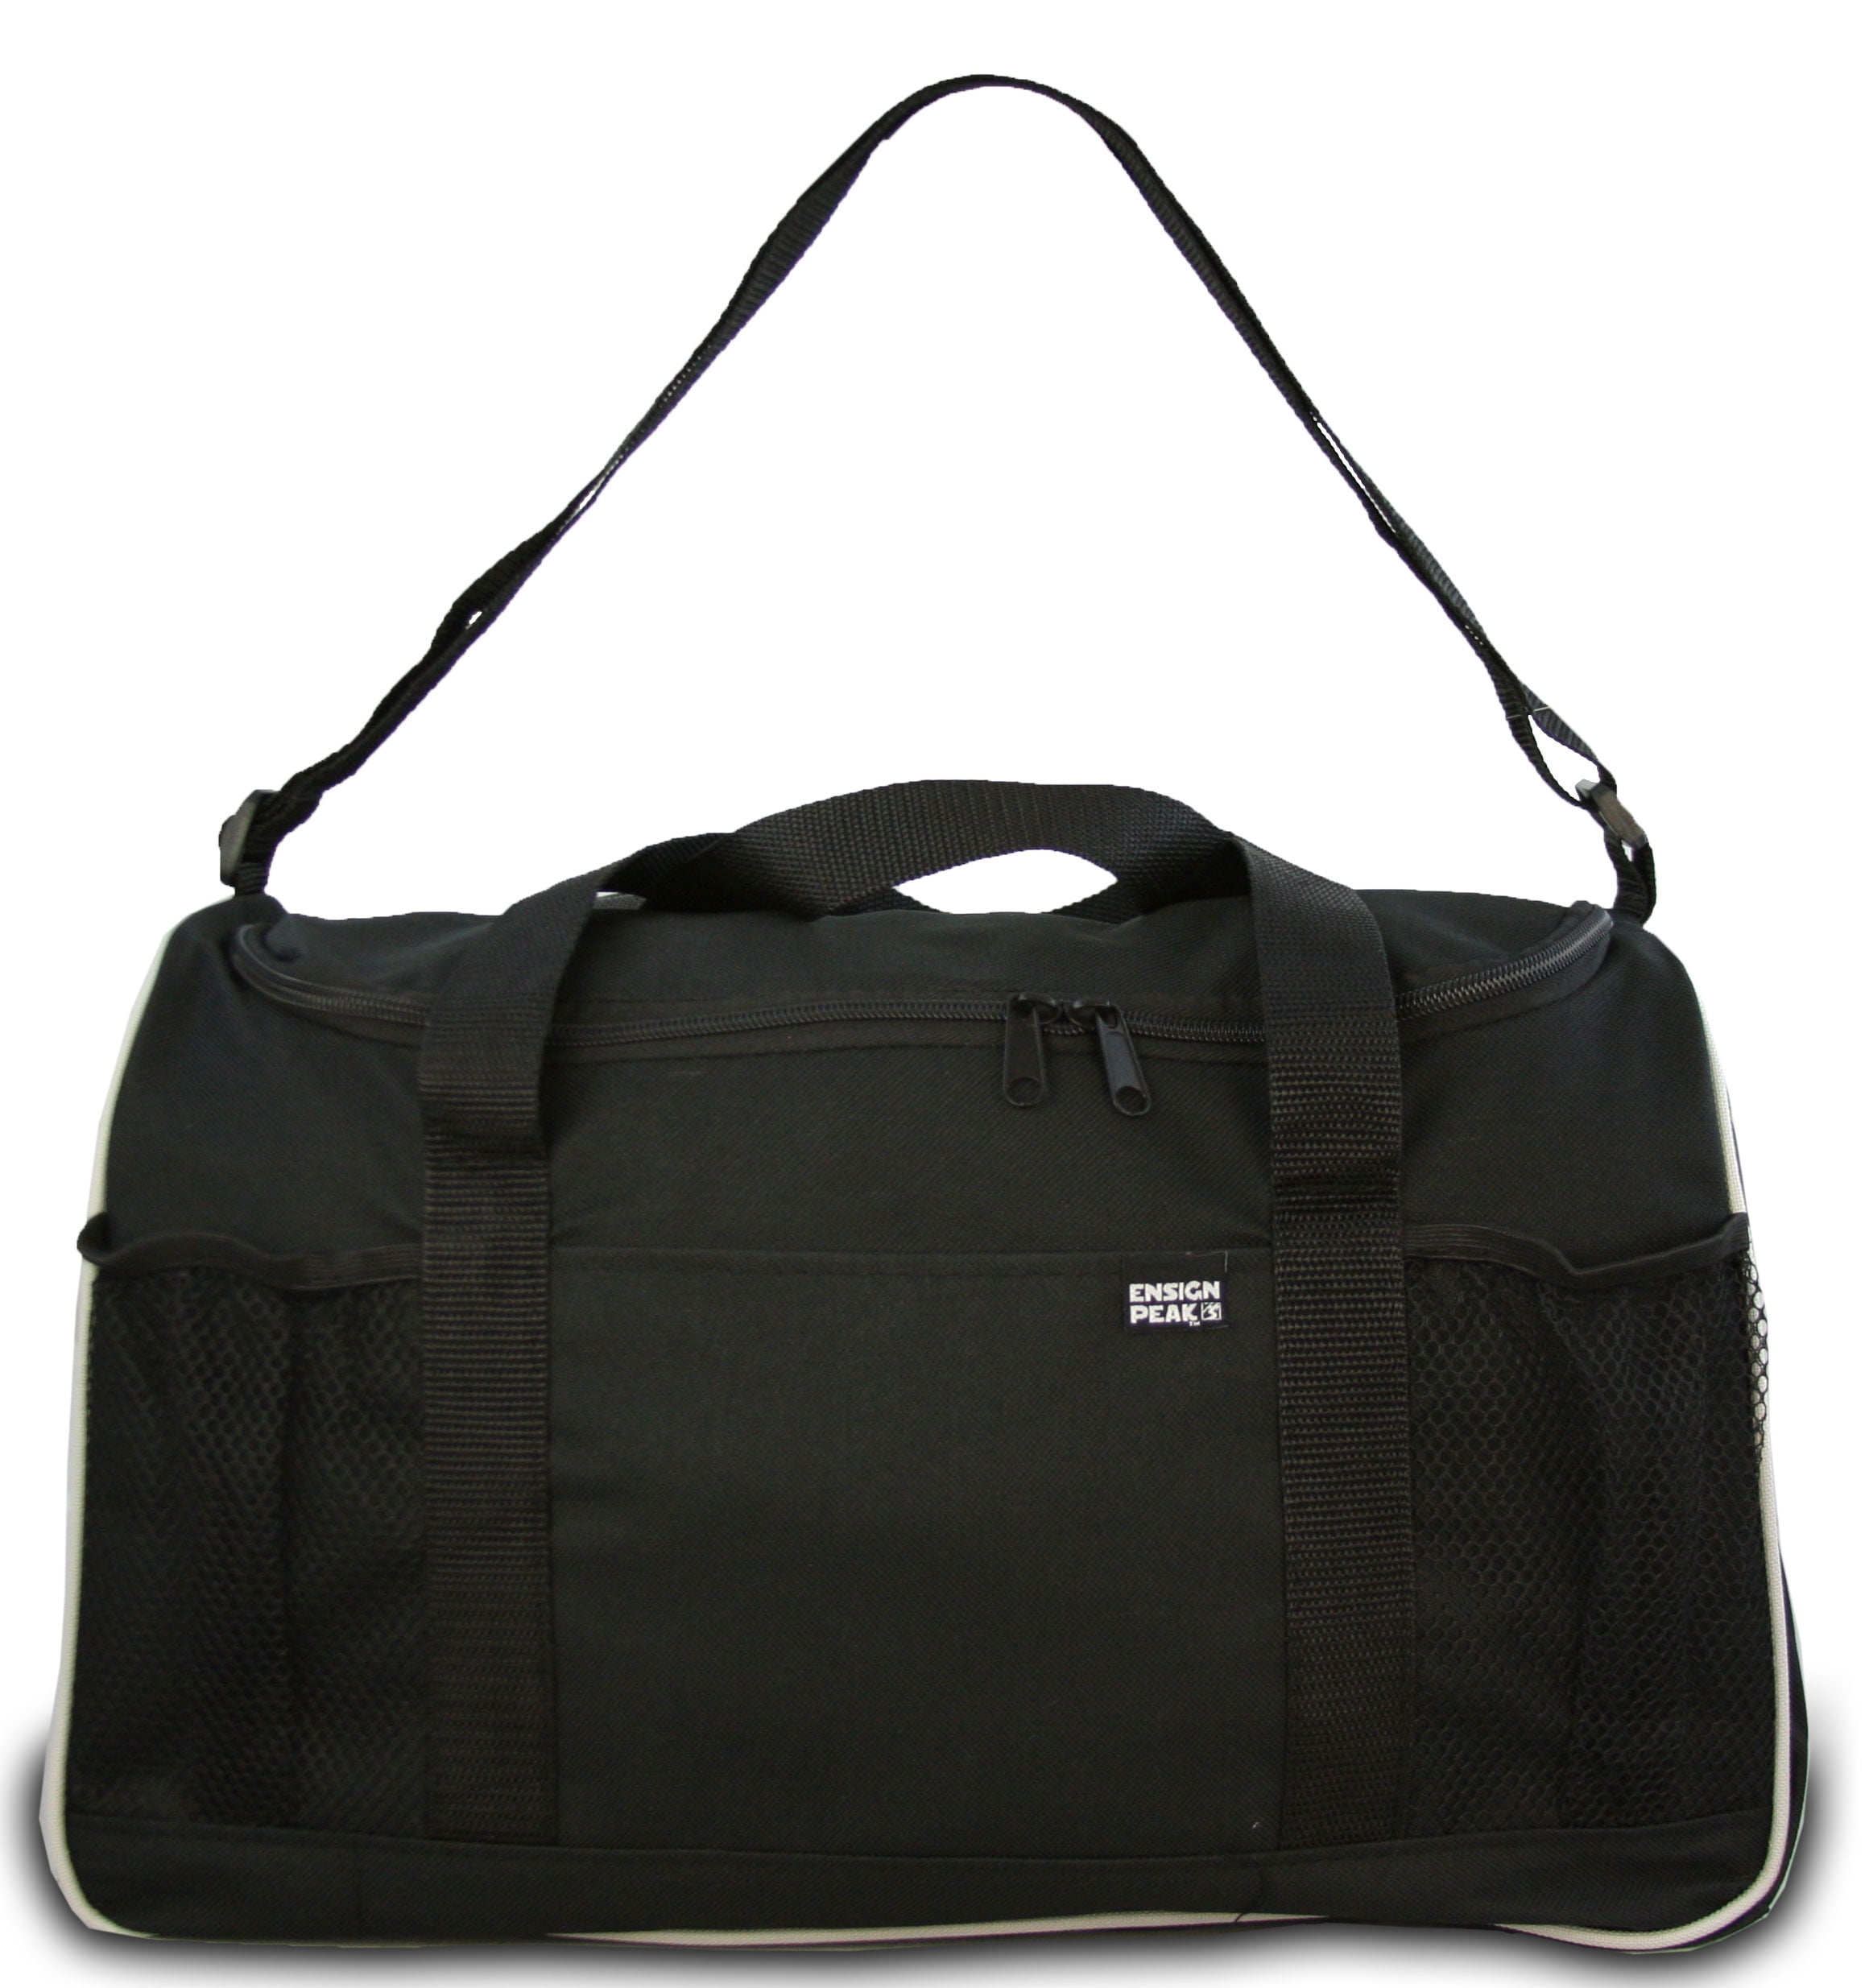 Ensign Peak Everyday Duffel Bag with Adjustable Shoulder Strap and Mesh Pockets - 0 ...